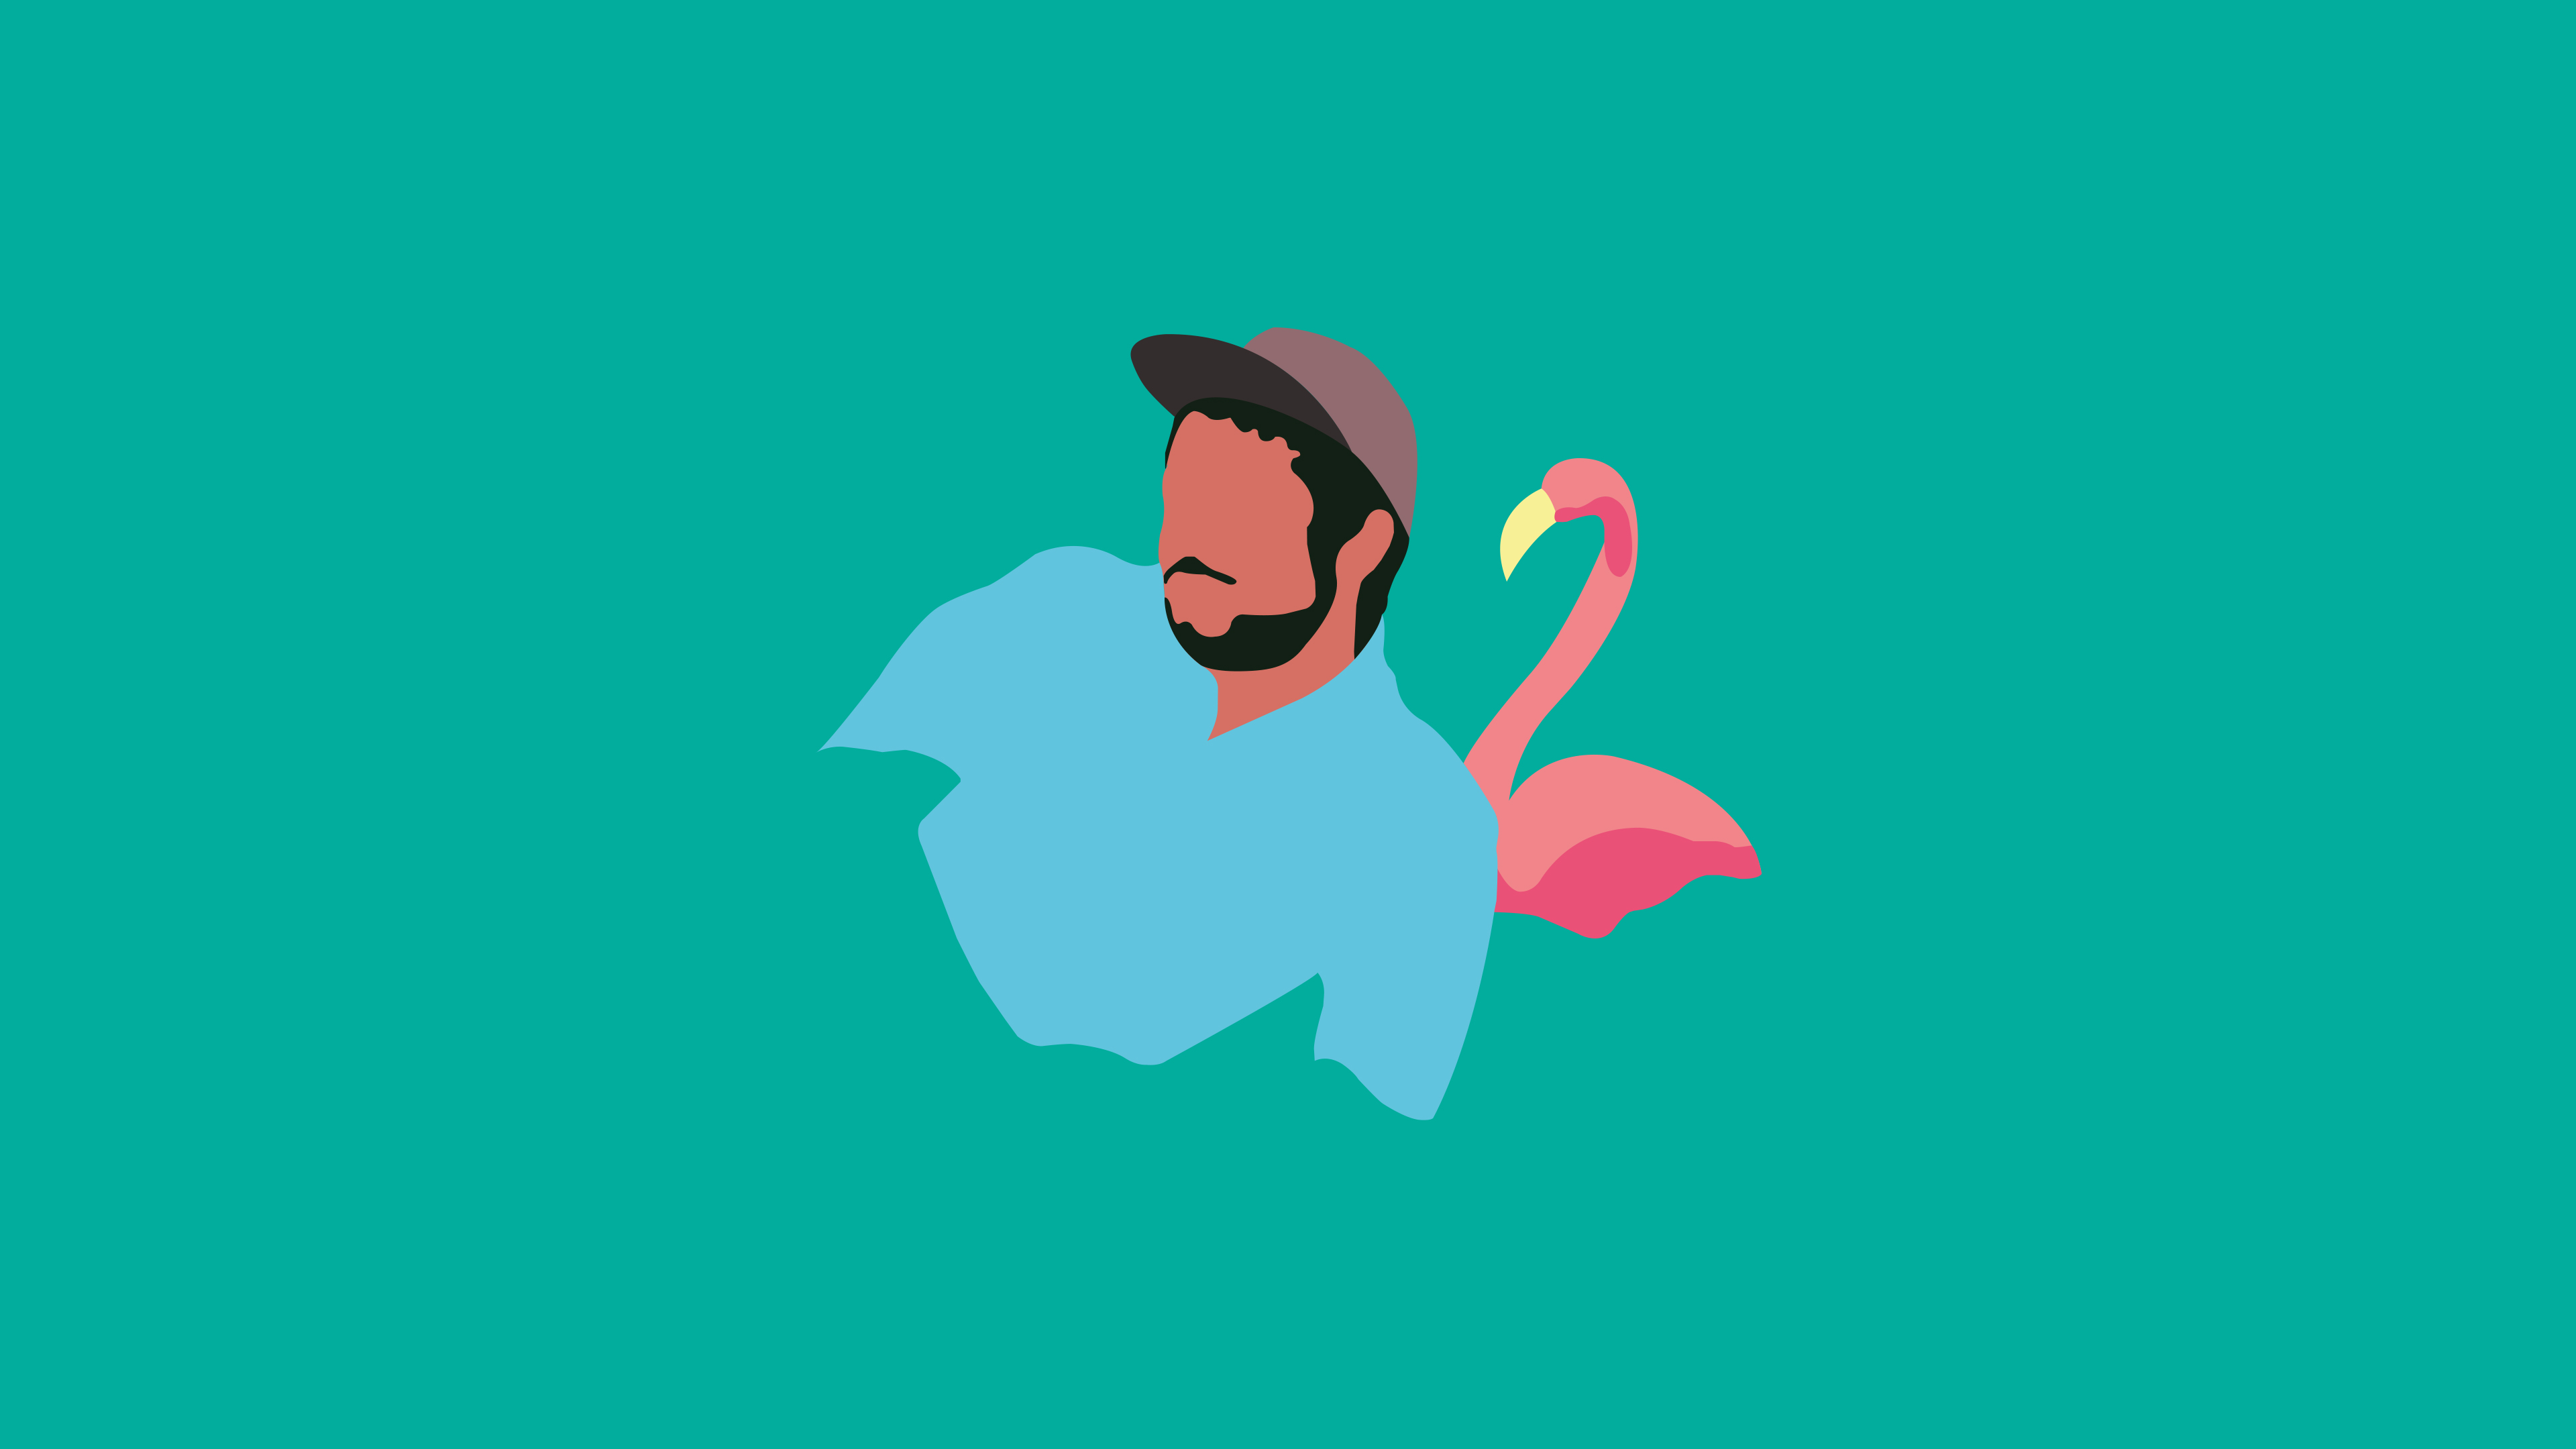 General 3840x2160 Adobe Illustrator Remaster pink beard minimalism teal turquoise flamingos